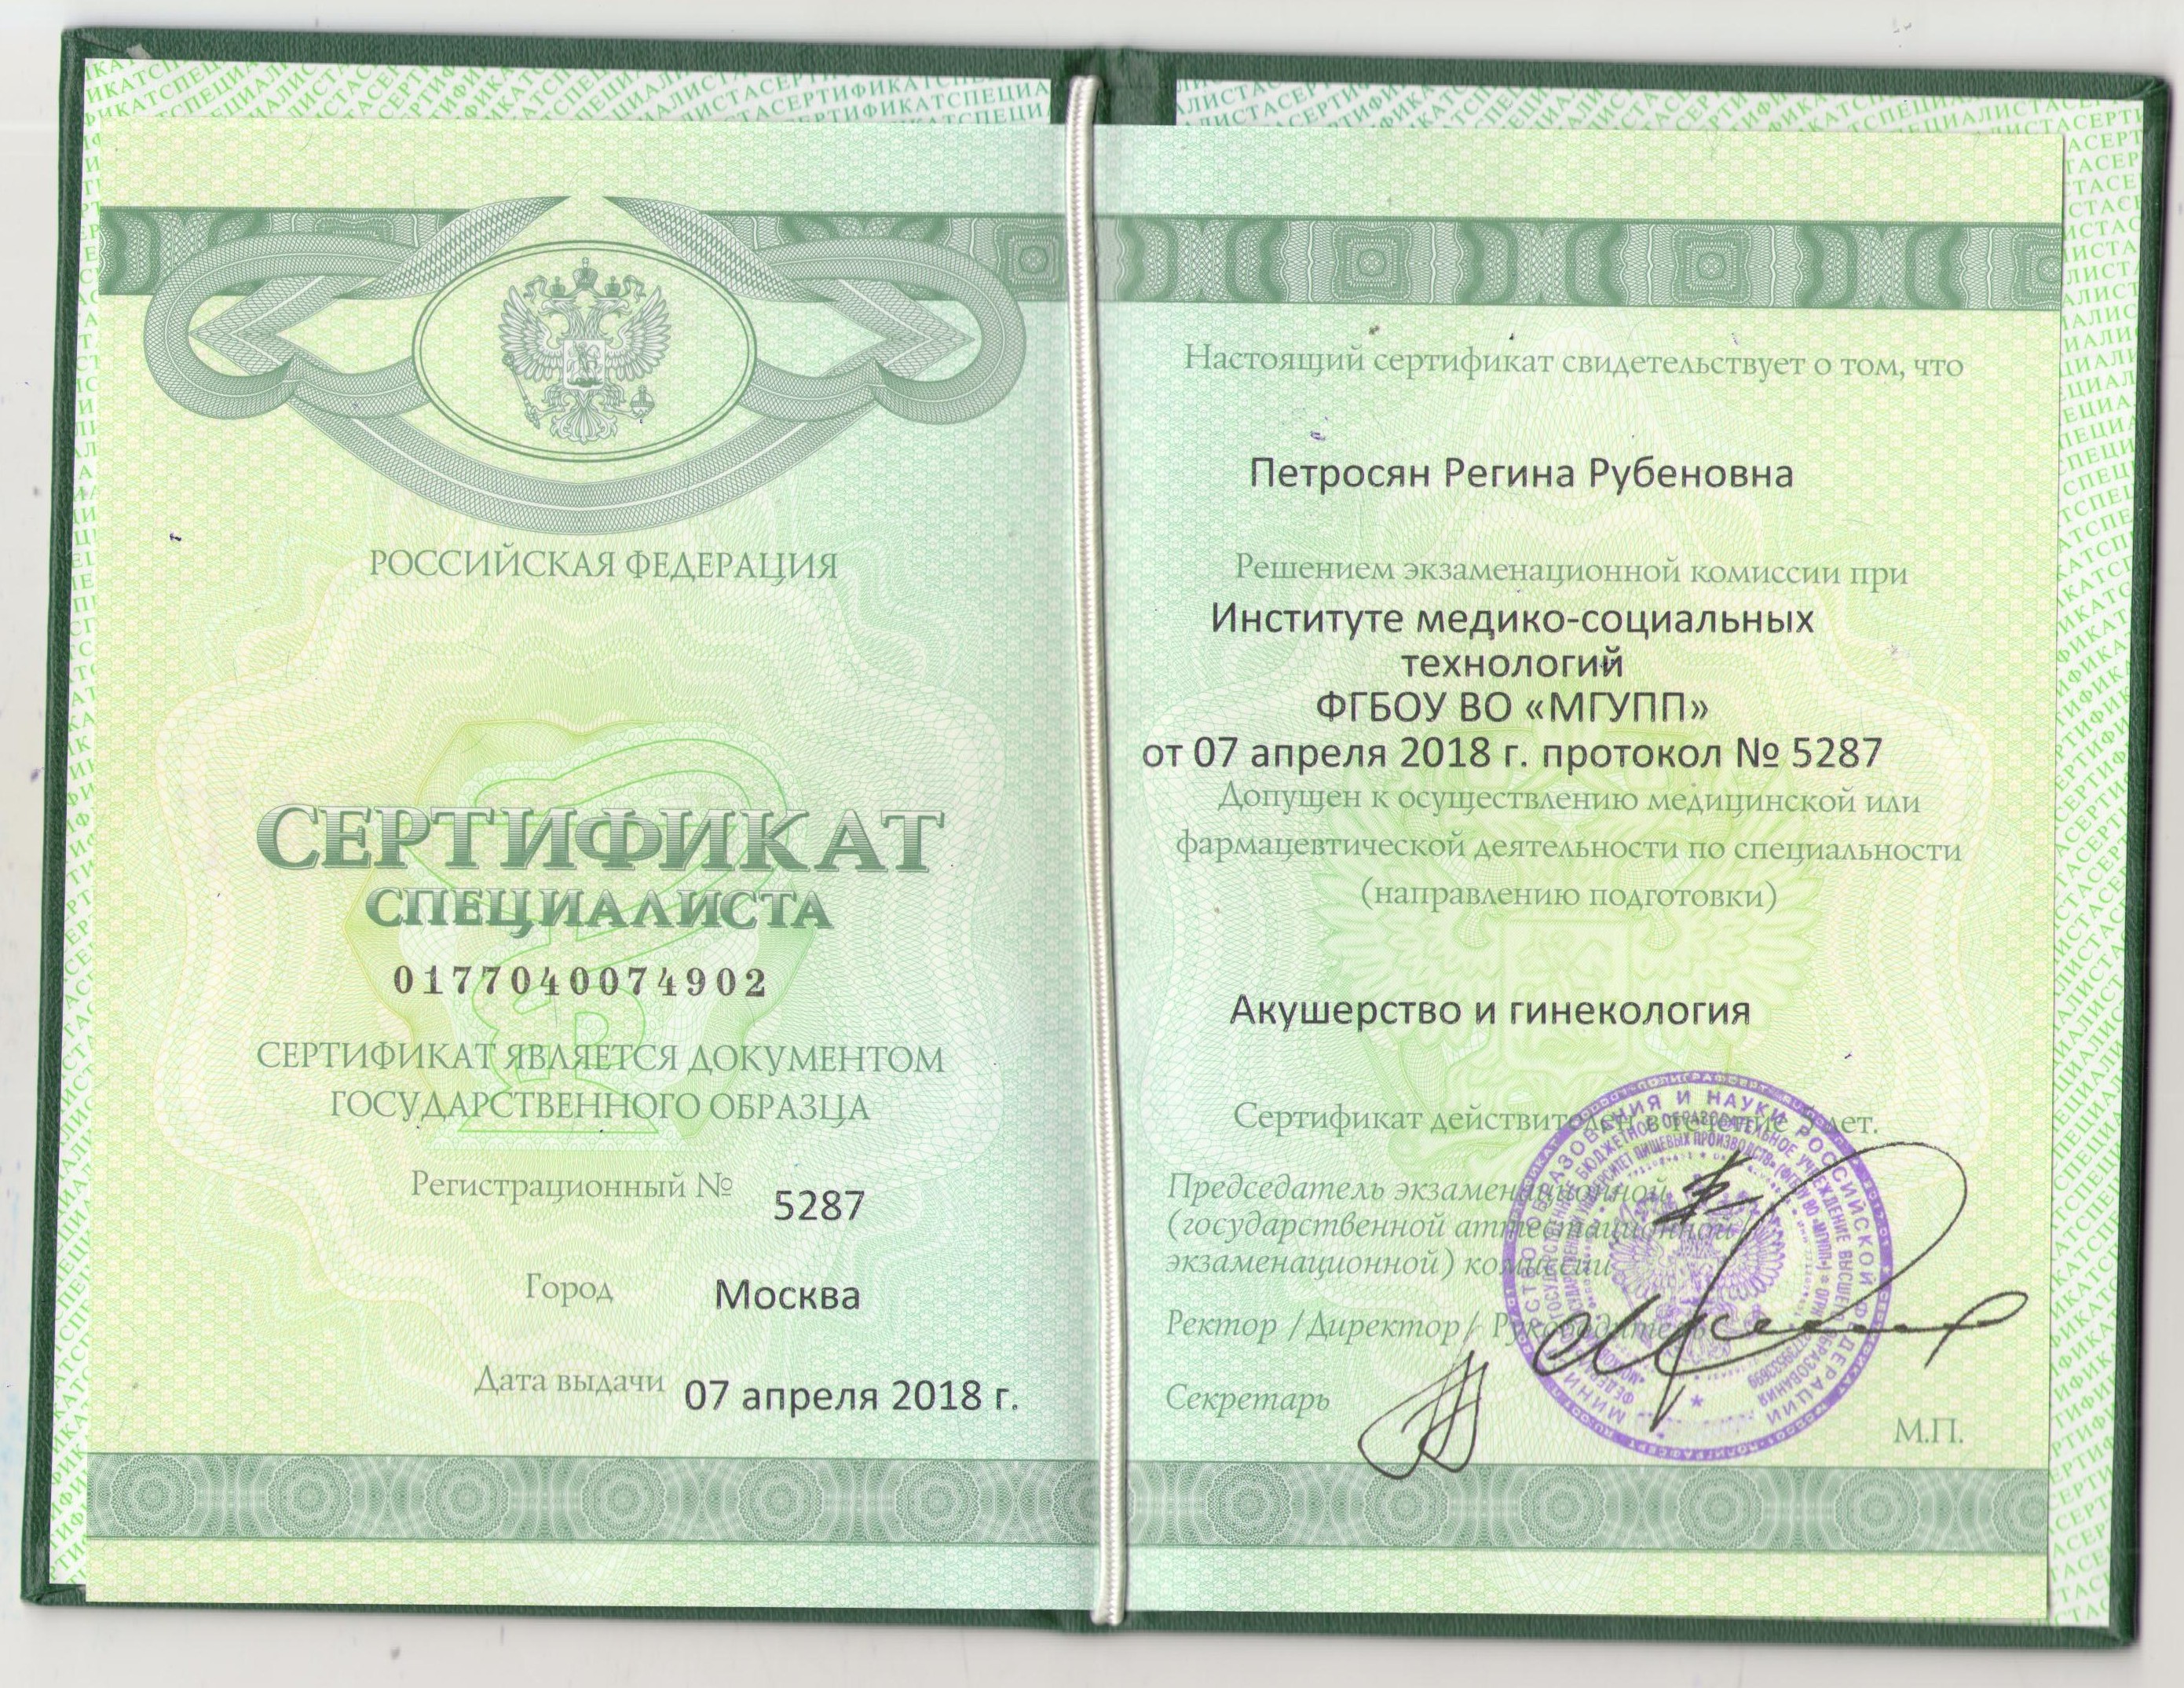 Сертификат Гинекология Петросян Регина Рубеновна